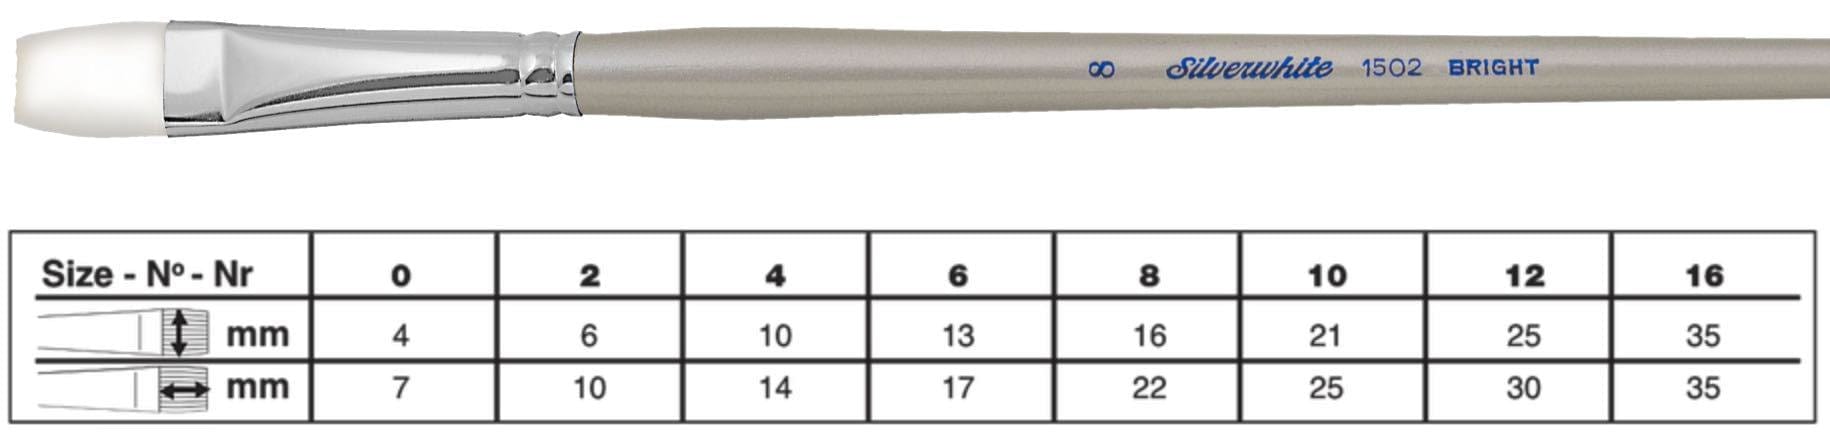 SILVER BRUSH SILVER BRUSH 16 (35mm x 35mm) Silver Brush 1502 Silverwhite Long Handle